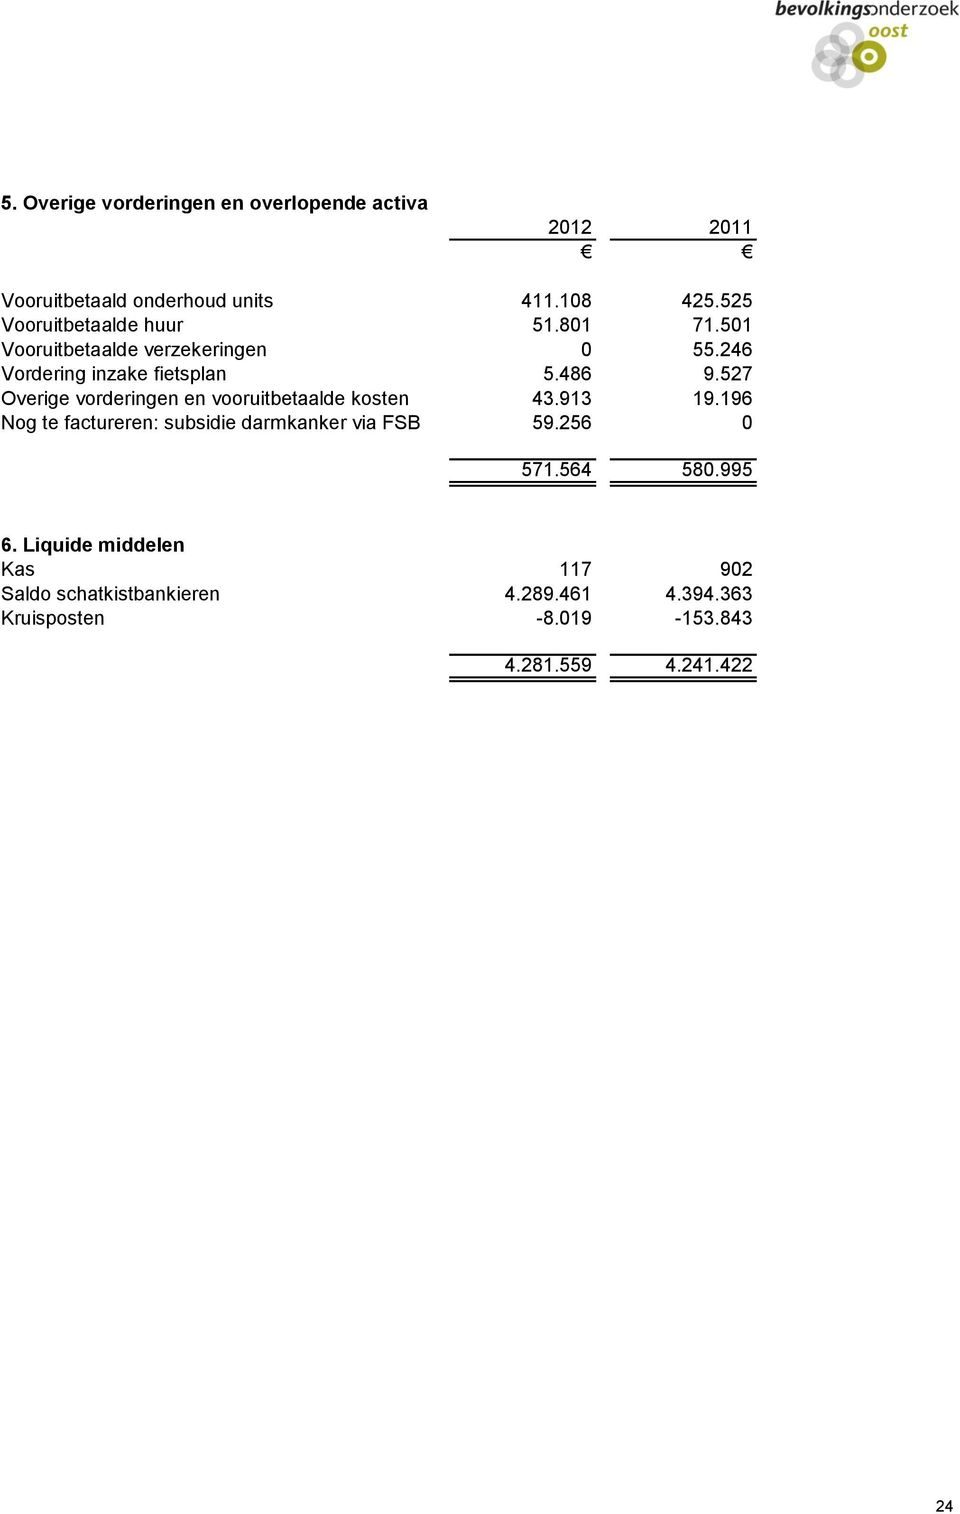 527 Overige vorderingen en vooruitbetaalde kosten 43.913 19.196 Nog te factureren: subsidie darmkanker via FSB 59.